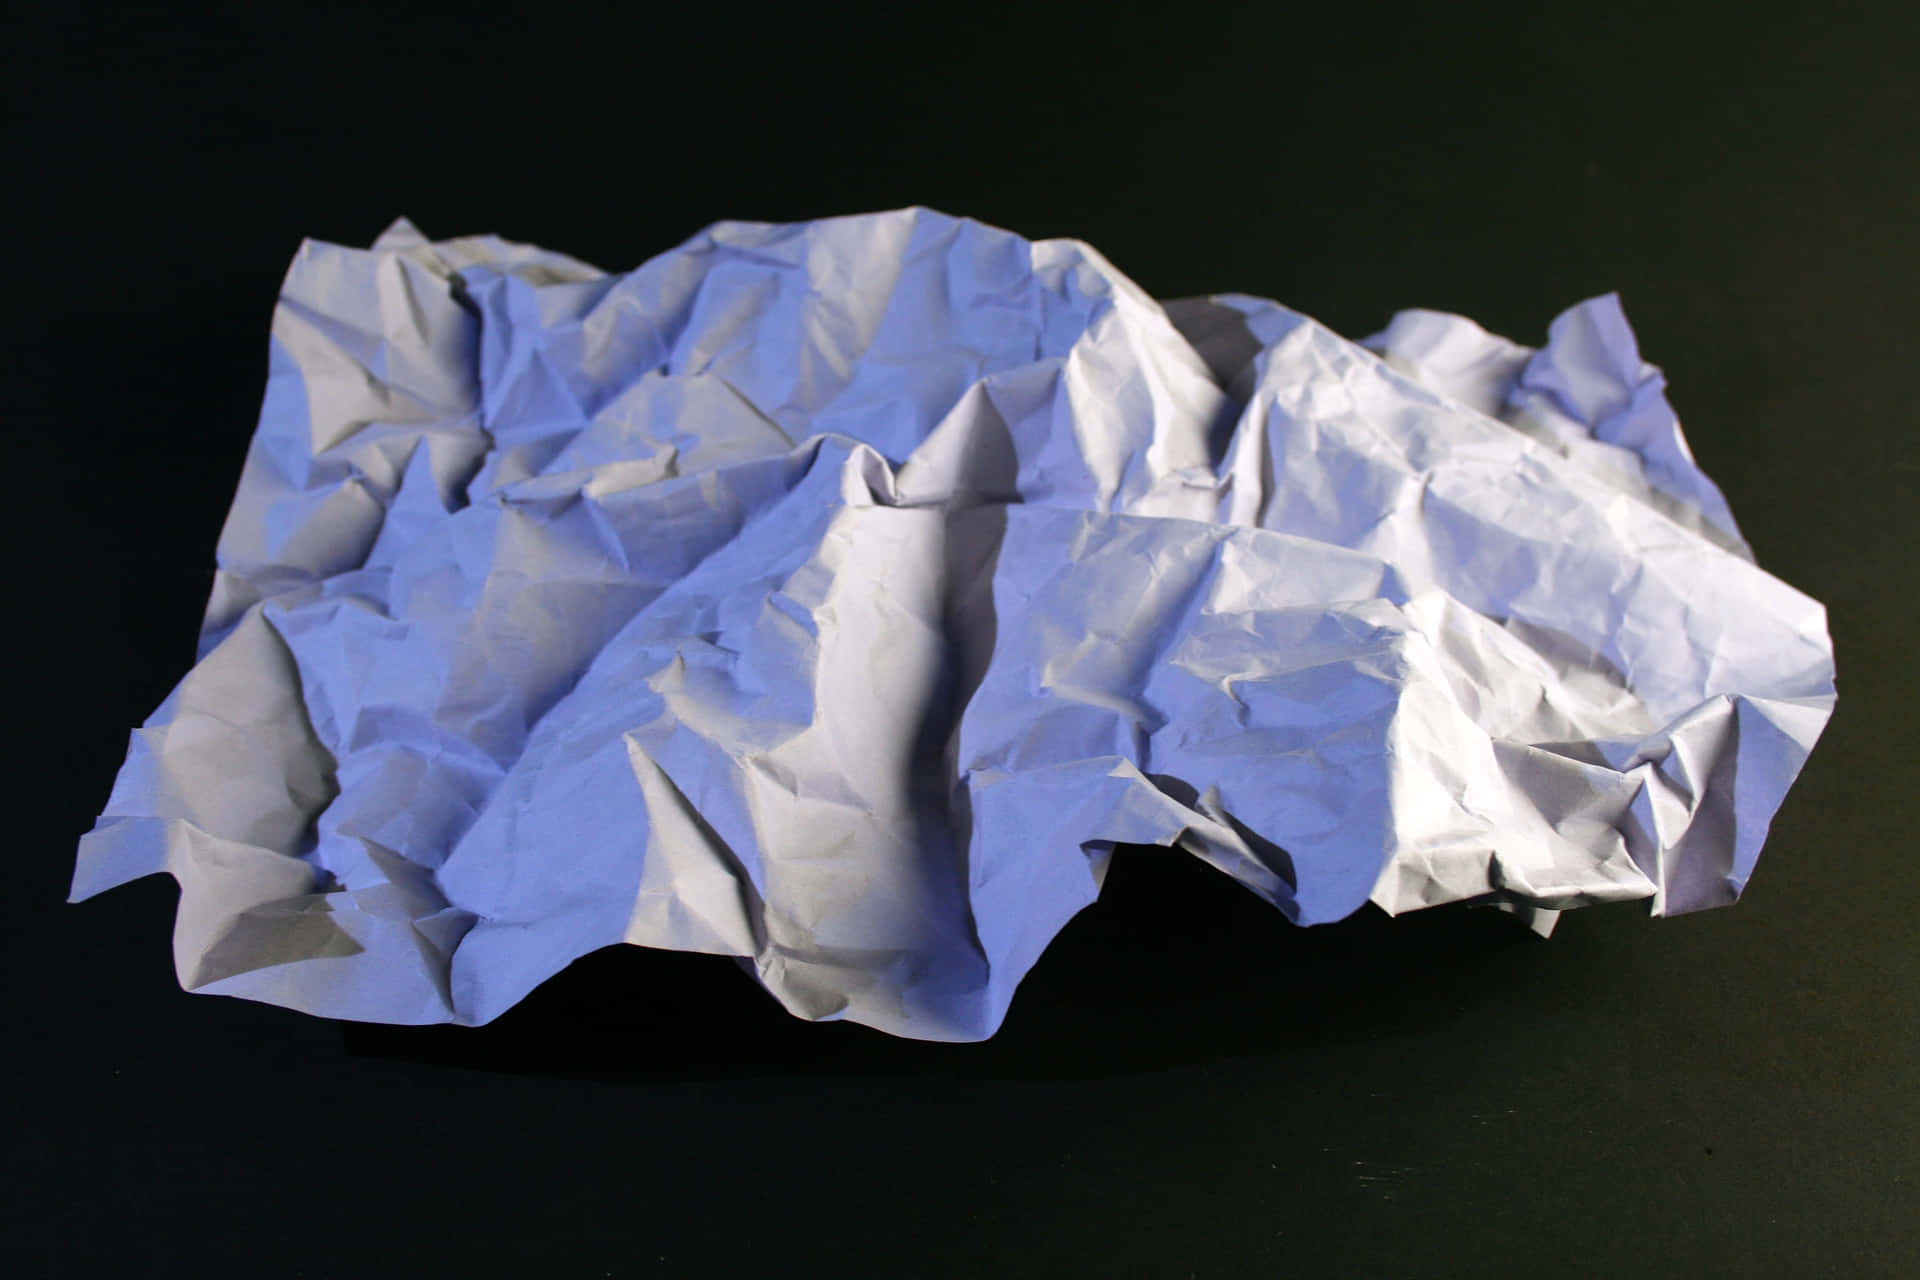 Einzerknitterter Papierhintergrund In Blau, Der Die Einzigartige Textur Und Linien Des Papiers Zeigt.